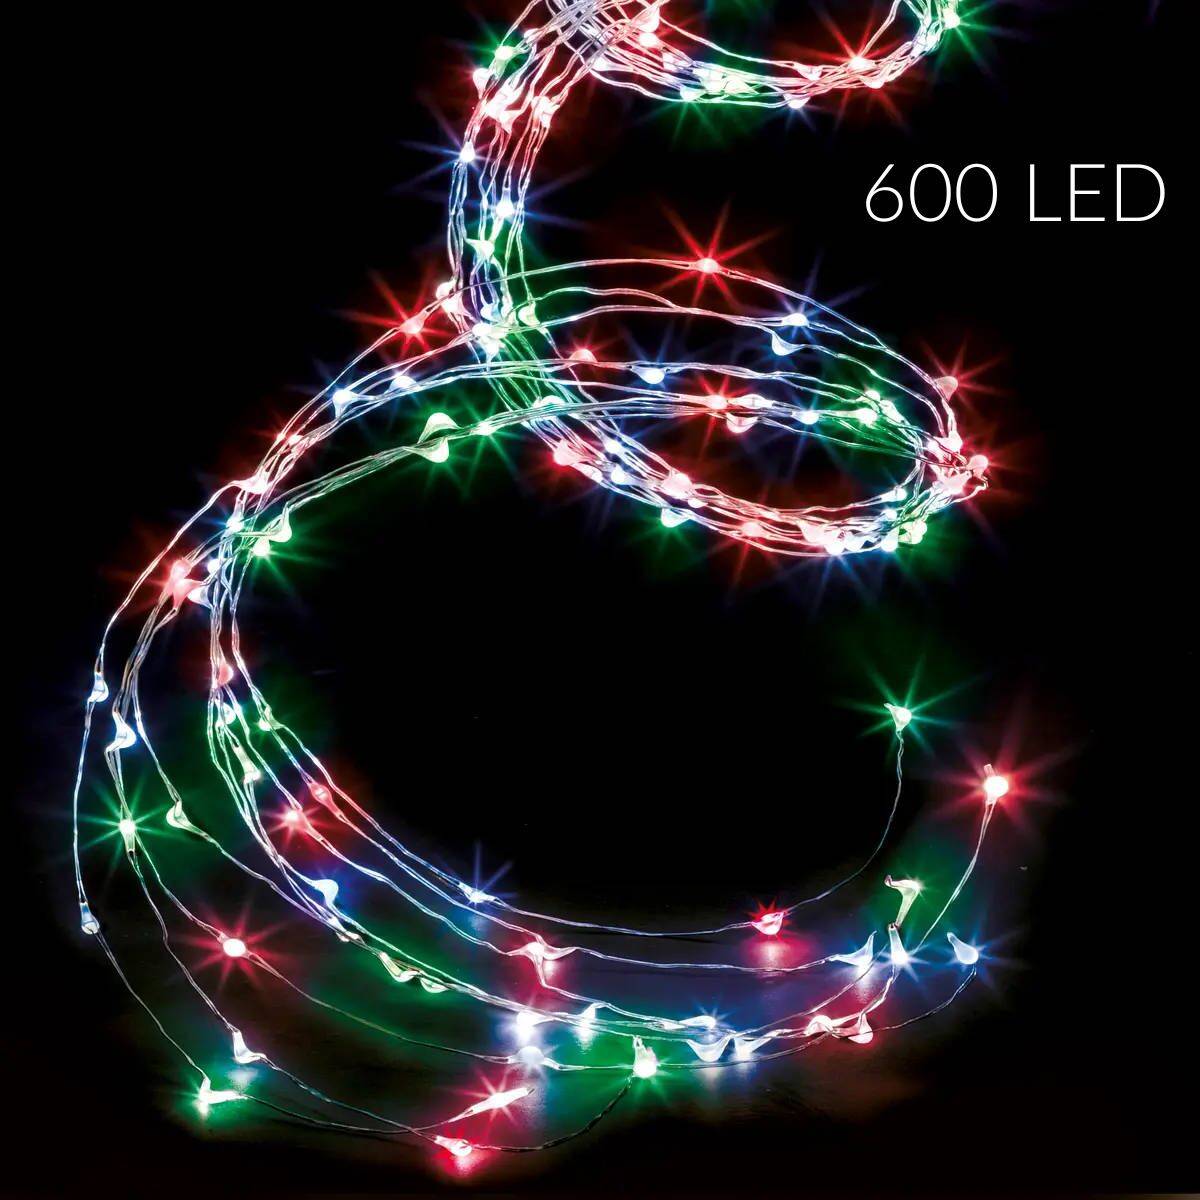 Girlanda świetlna zewnętrzna, kaskada, 600 LED